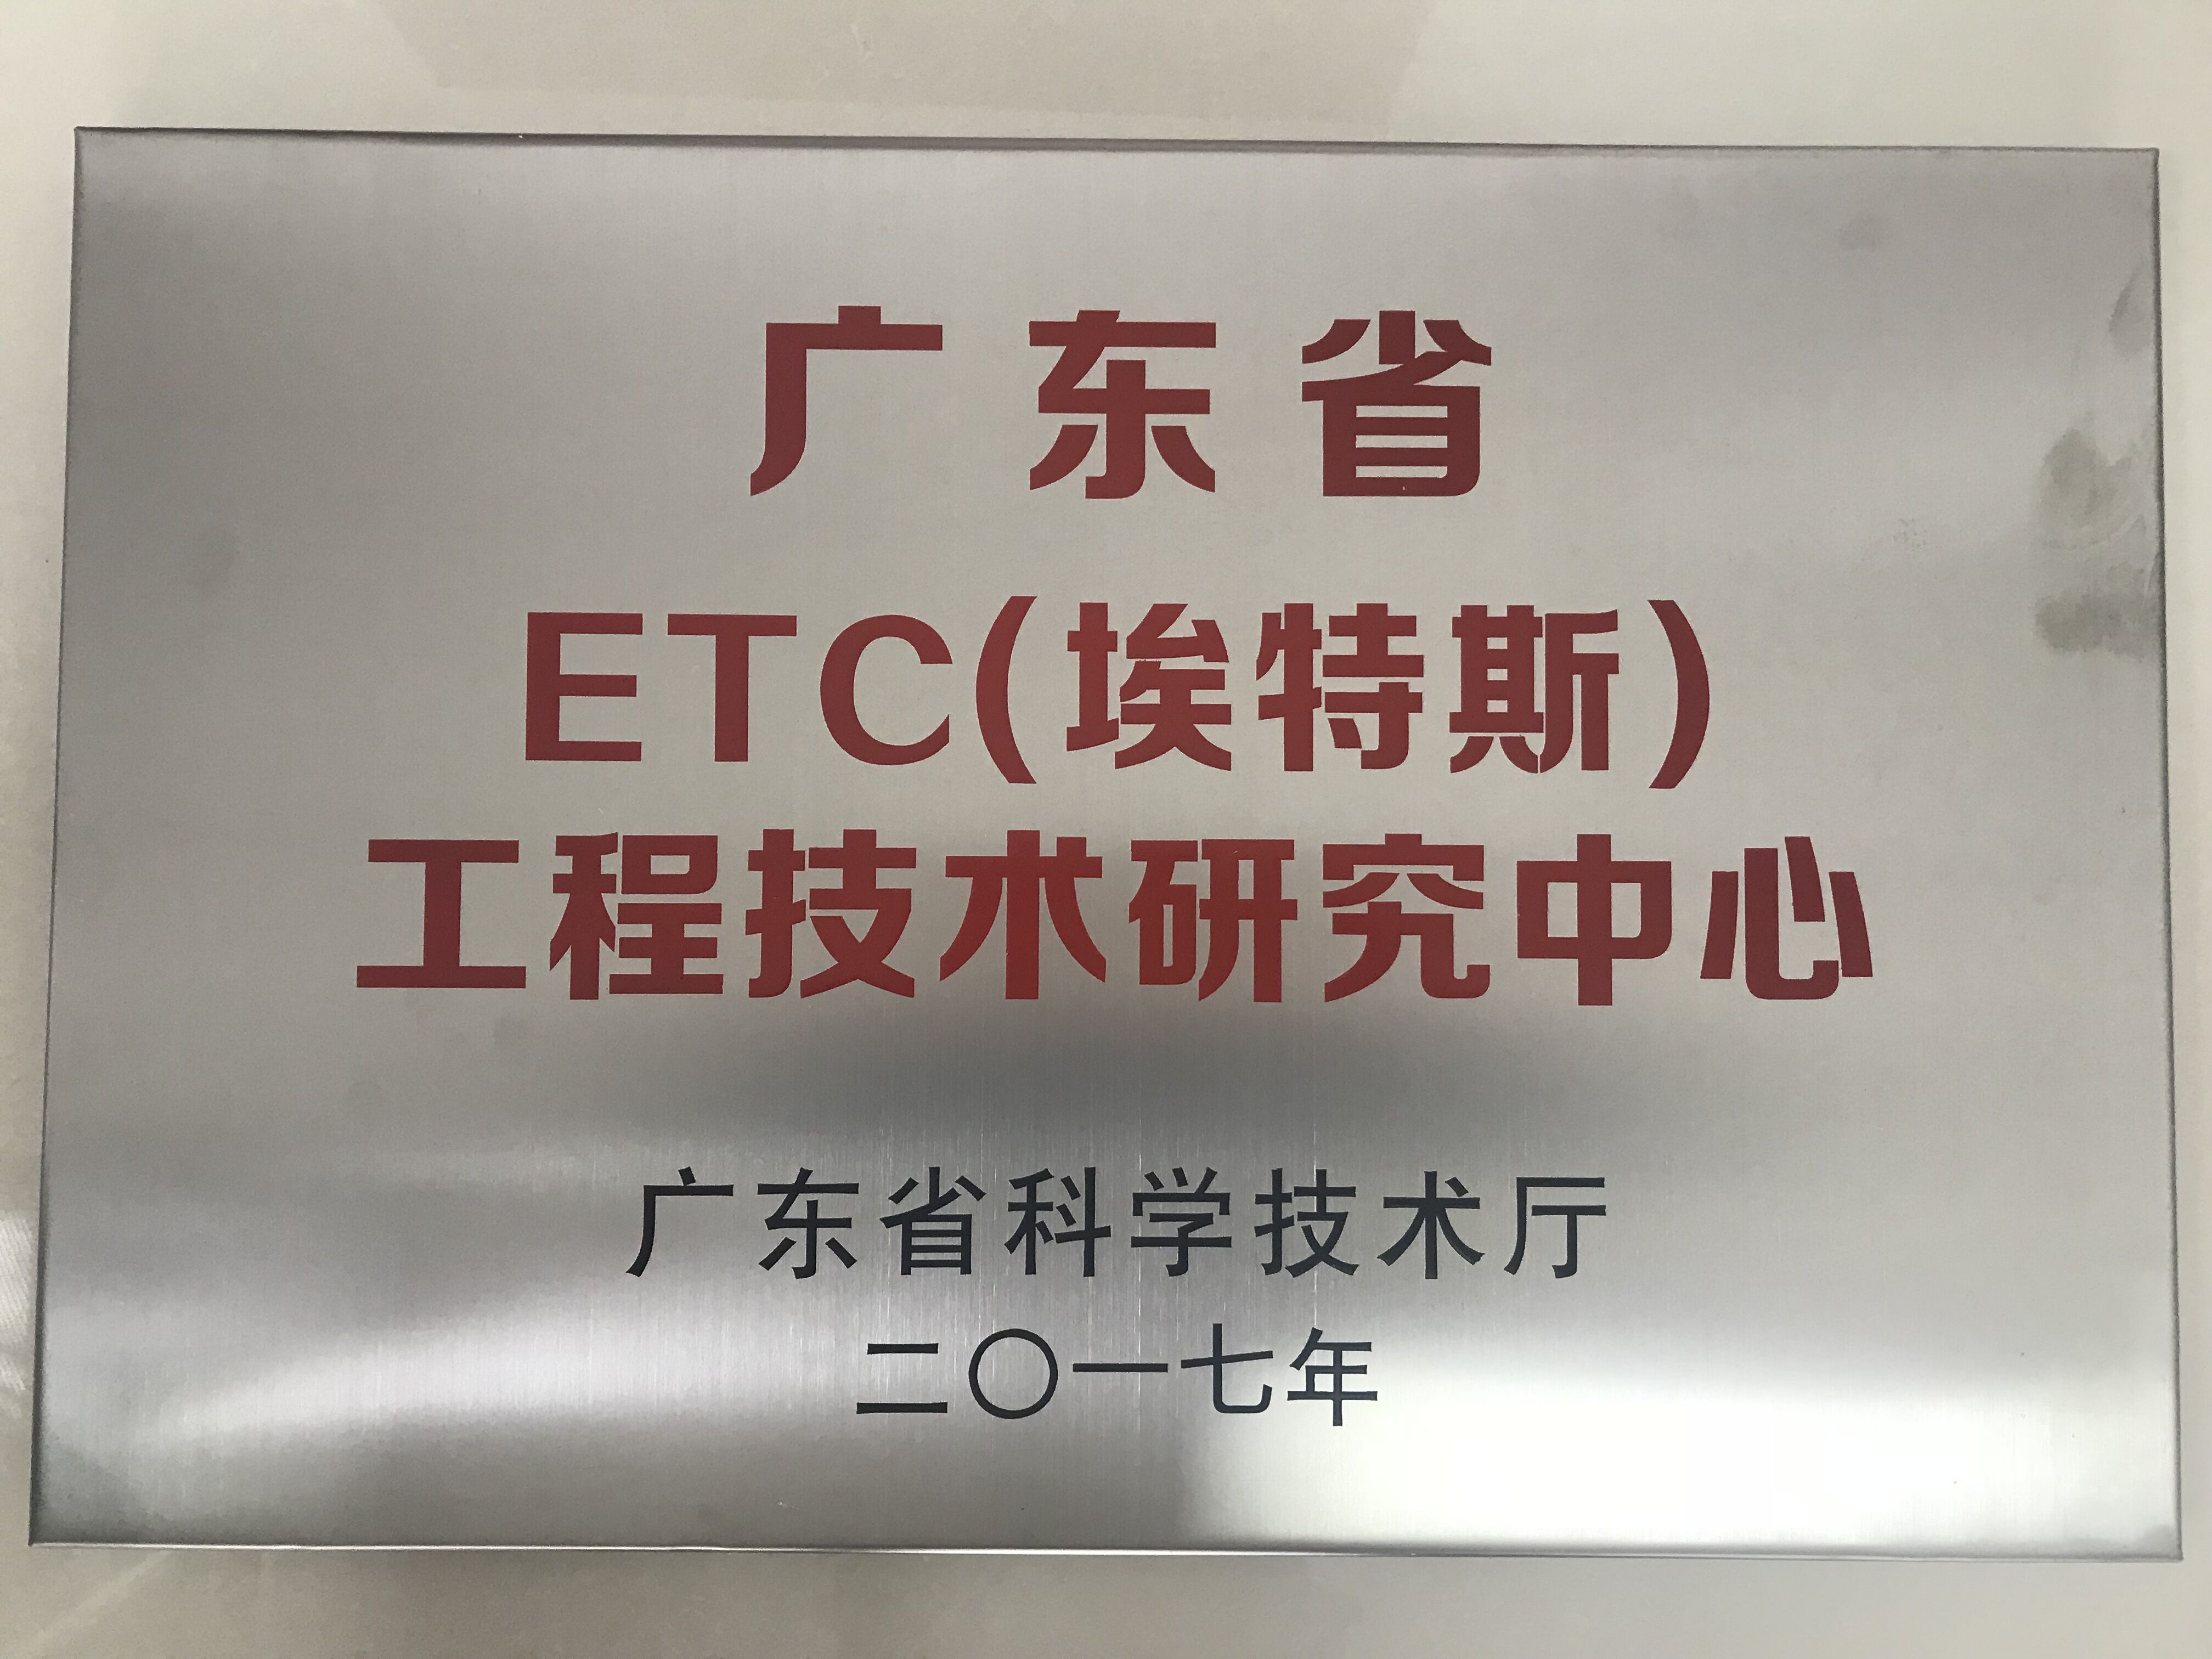 广东省ETC（JXF吉祥坊）工程技术研究中心.jpg